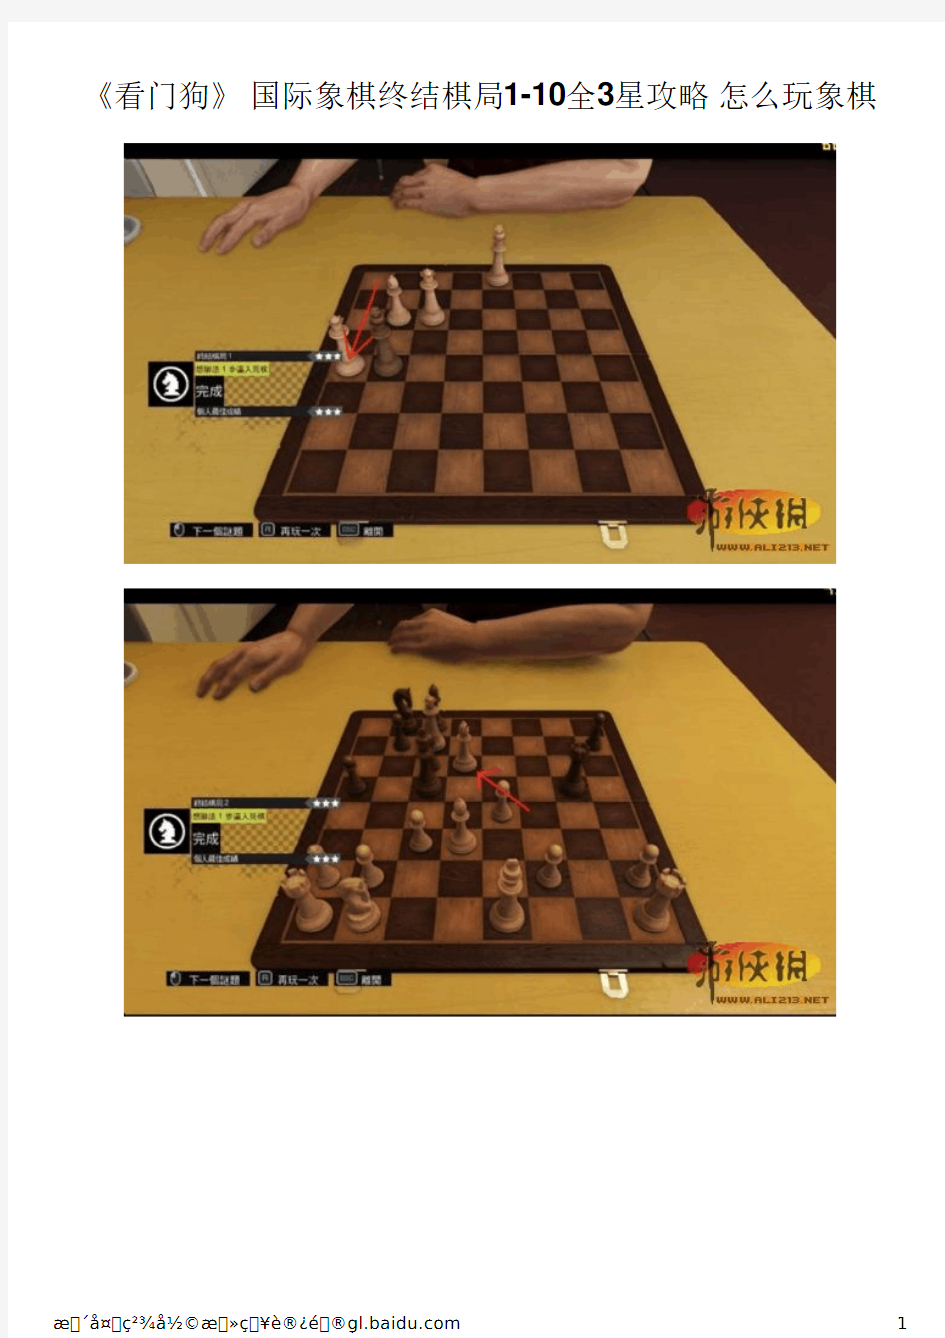 《看门狗》 国际象棋终结棋局1-10全3星攻略 怎么玩象棋